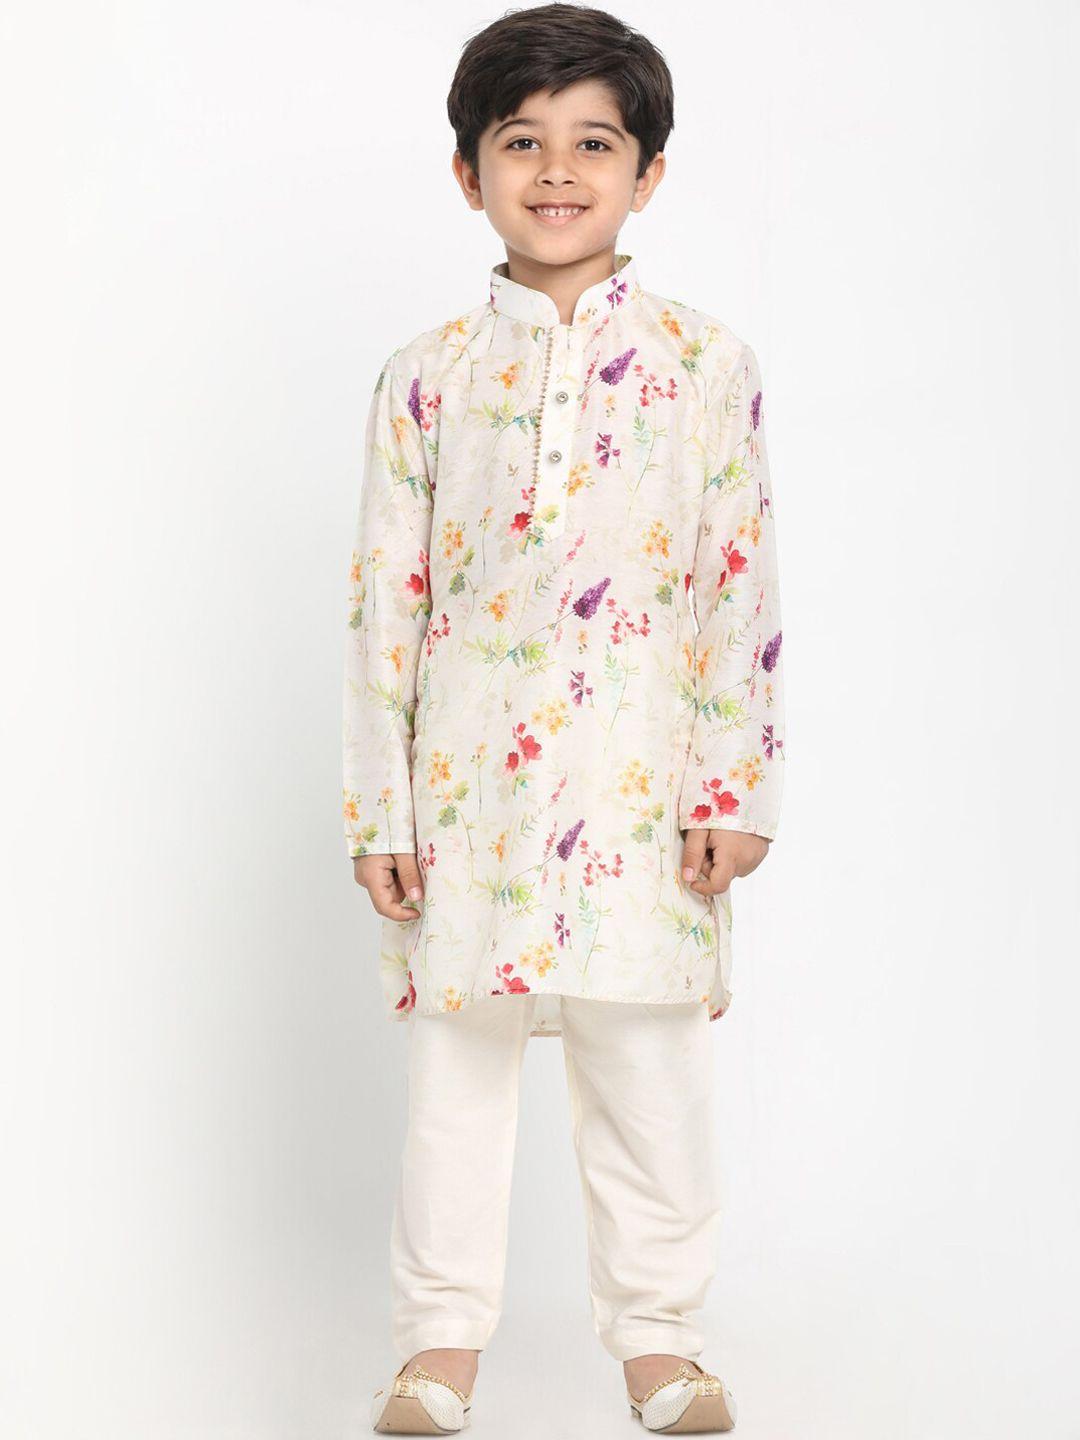 jbn creation boys cream-coloured printed kurta with pyjamas